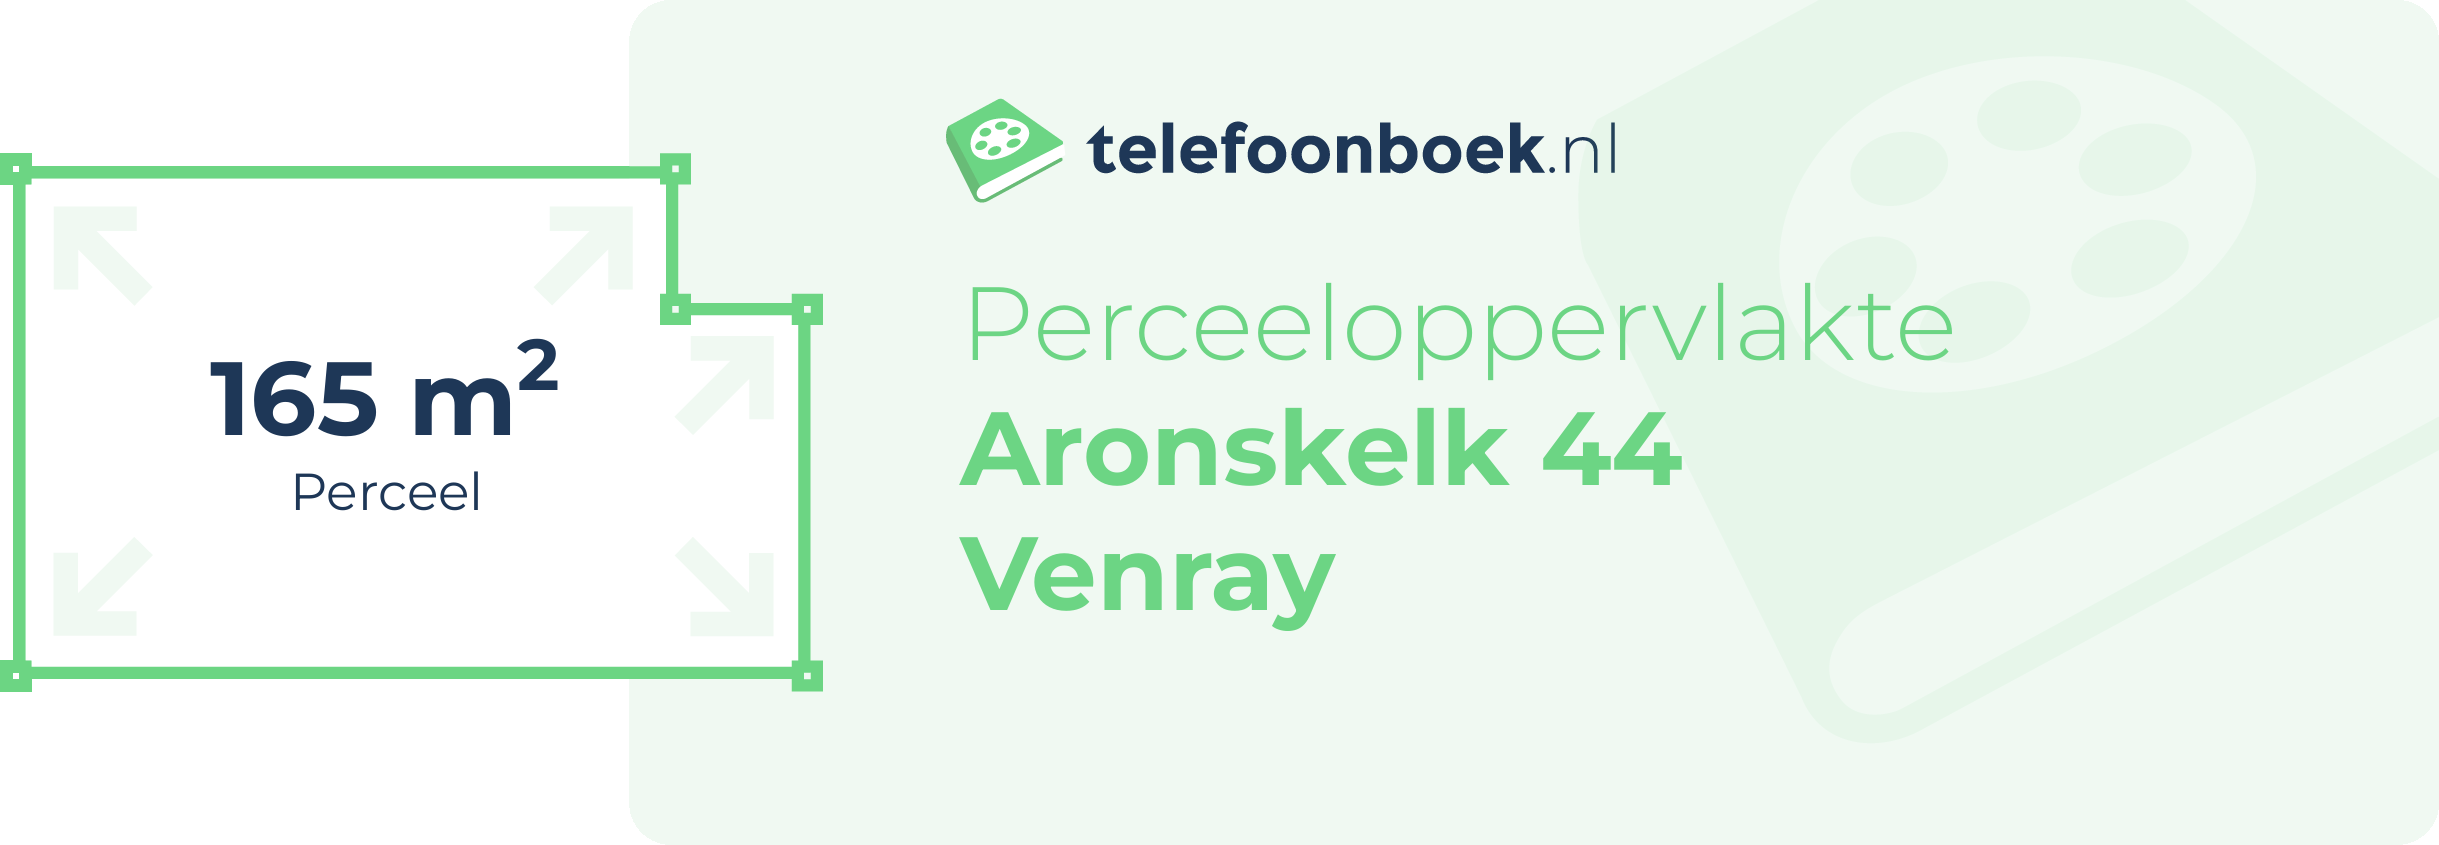 Perceeloppervlakte Aronskelk 44 Venray